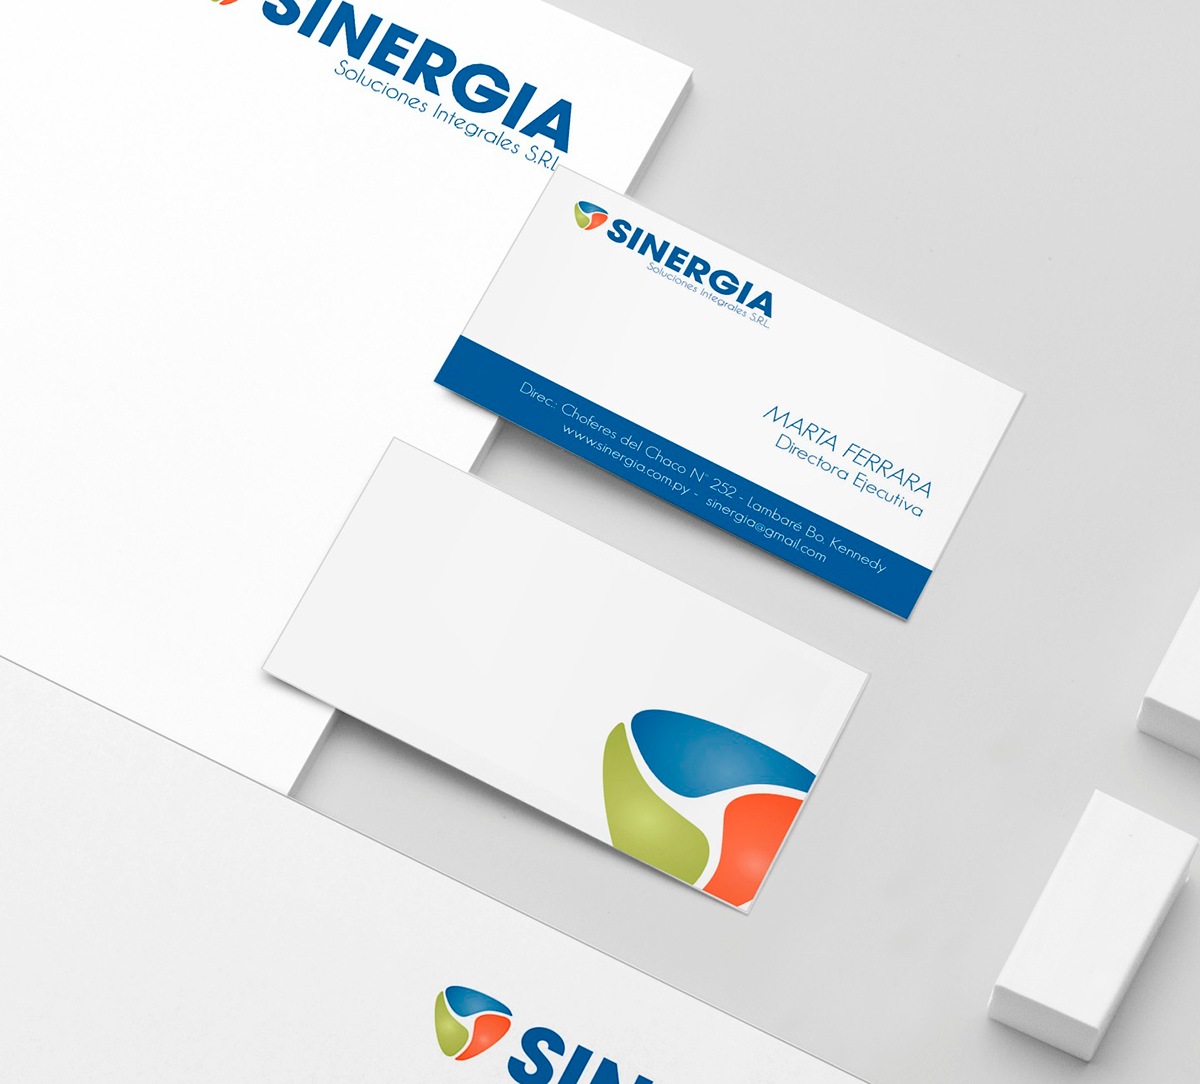 #sinergia #Branding #Design